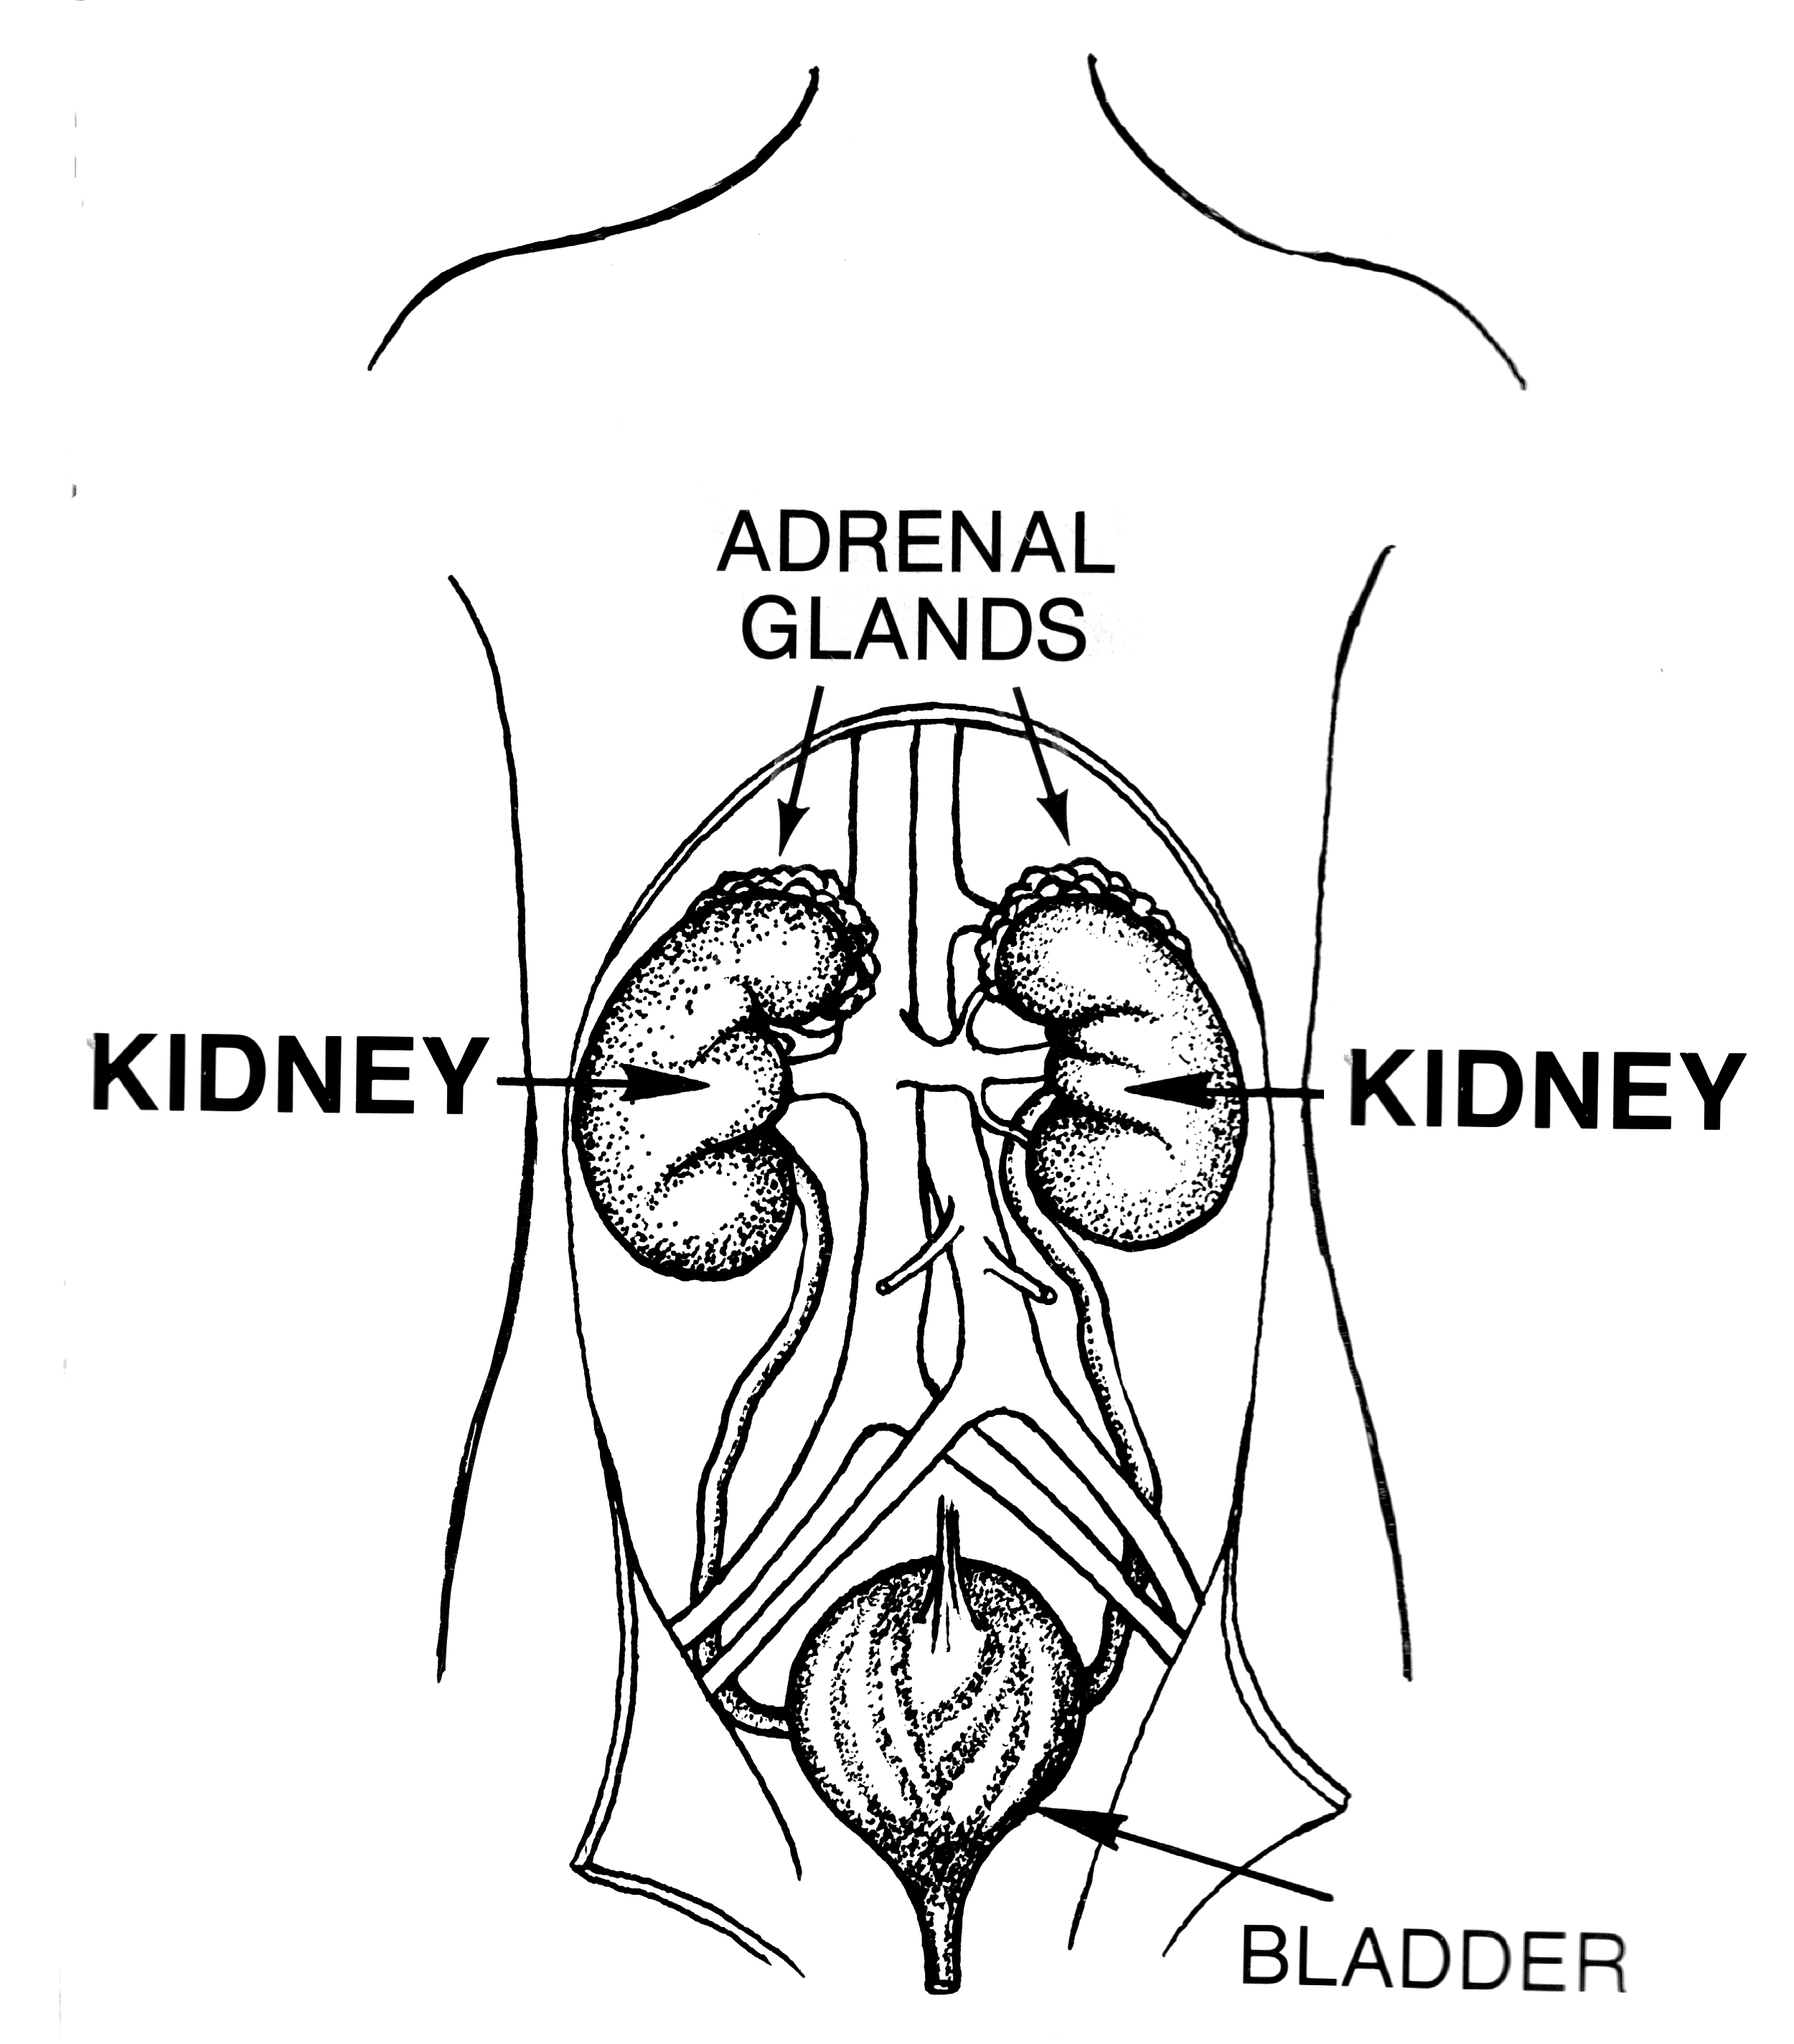 Kidneys, adrenal glands, bladder, diagram